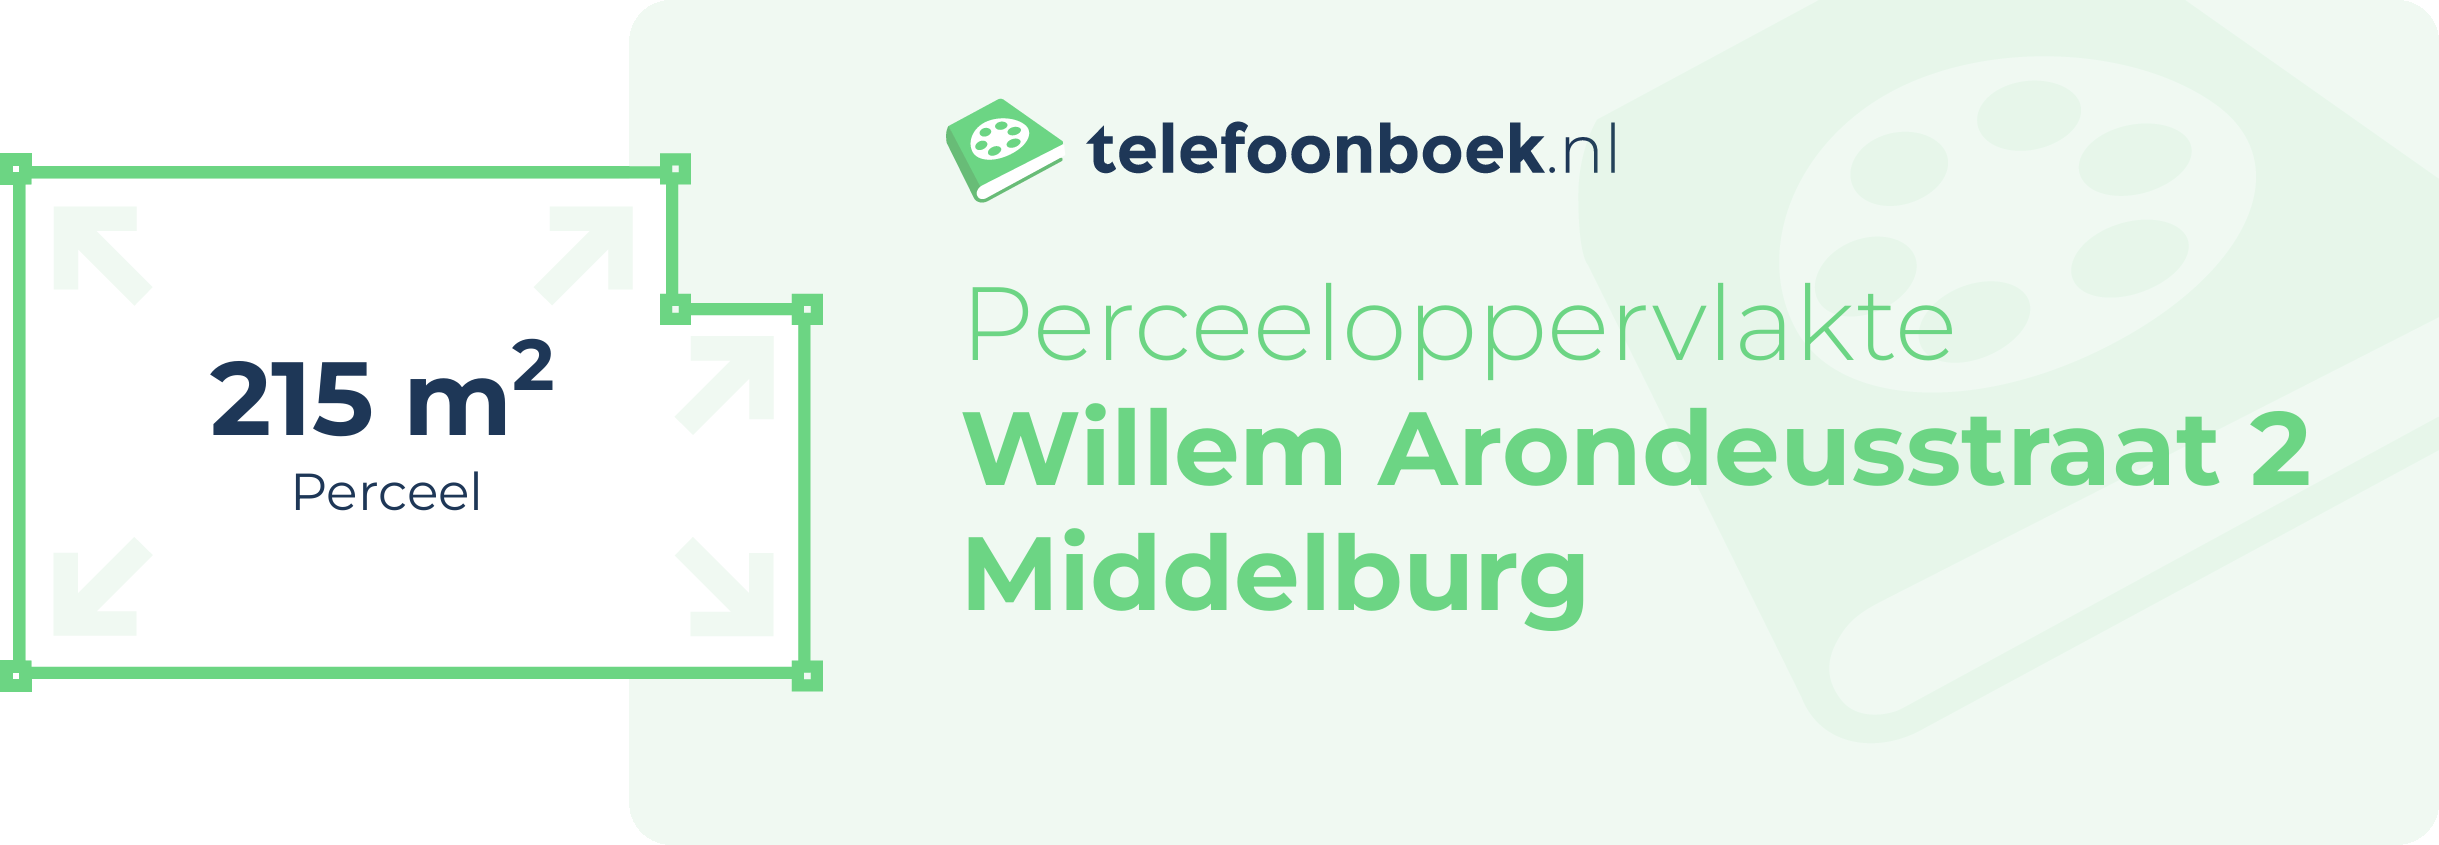 Perceeloppervlakte Willem Arondeusstraat 2 Middelburg